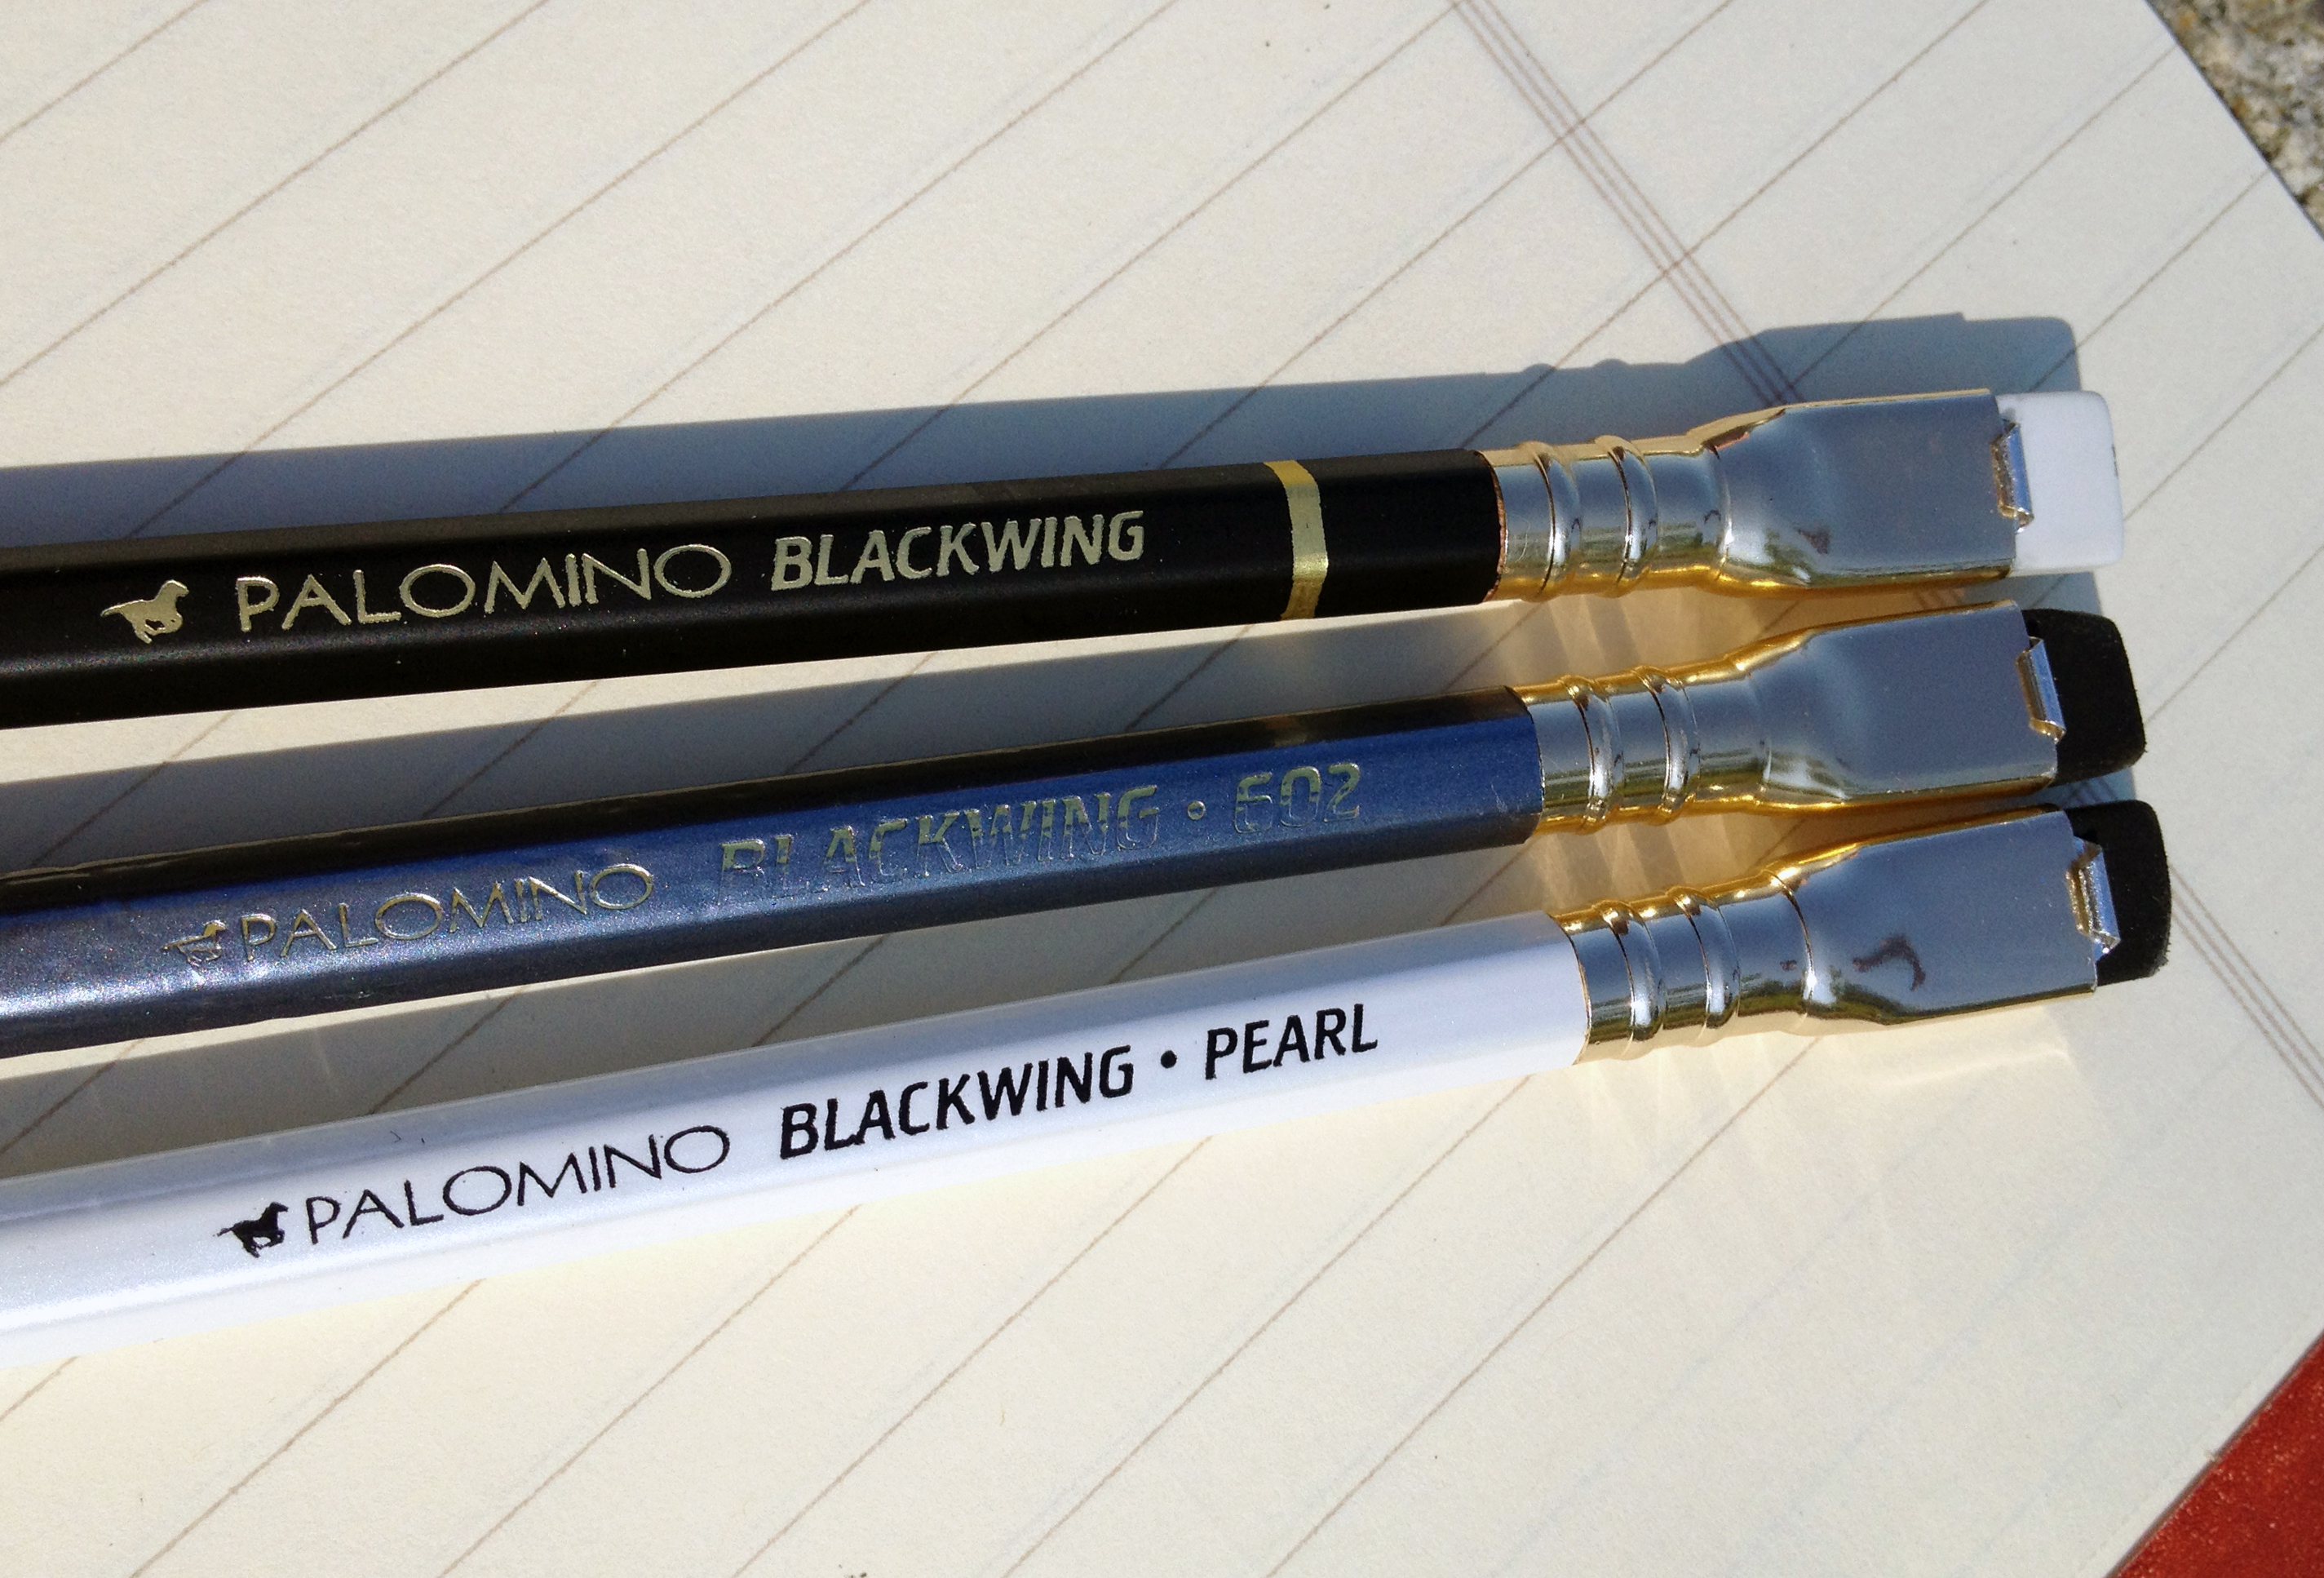 PALOMINO BLACKWING 602 PENCIL REVIEW